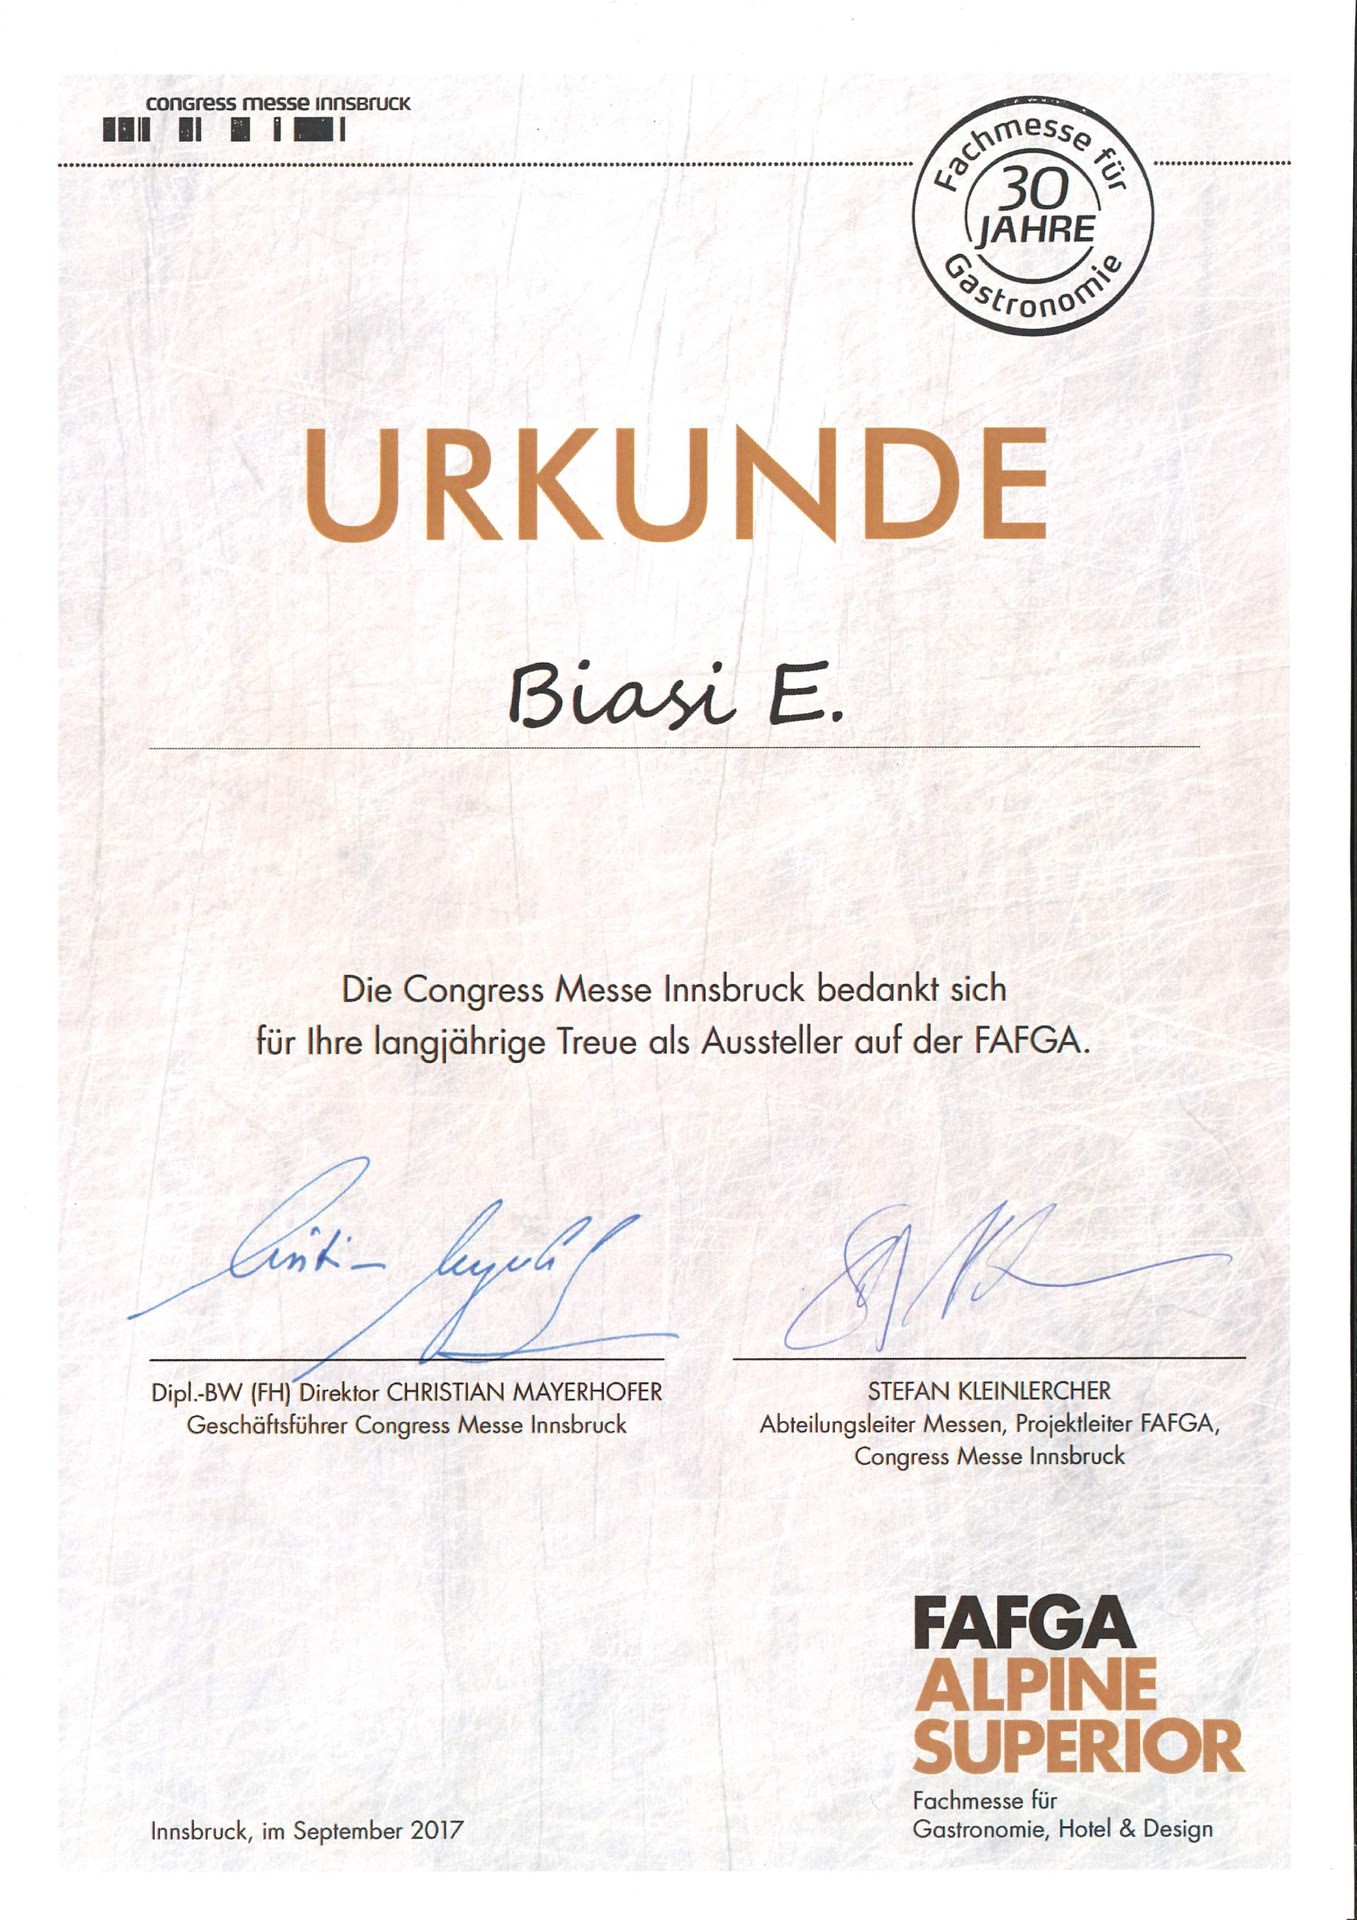 Urkunde - 30 Jahre Fafga